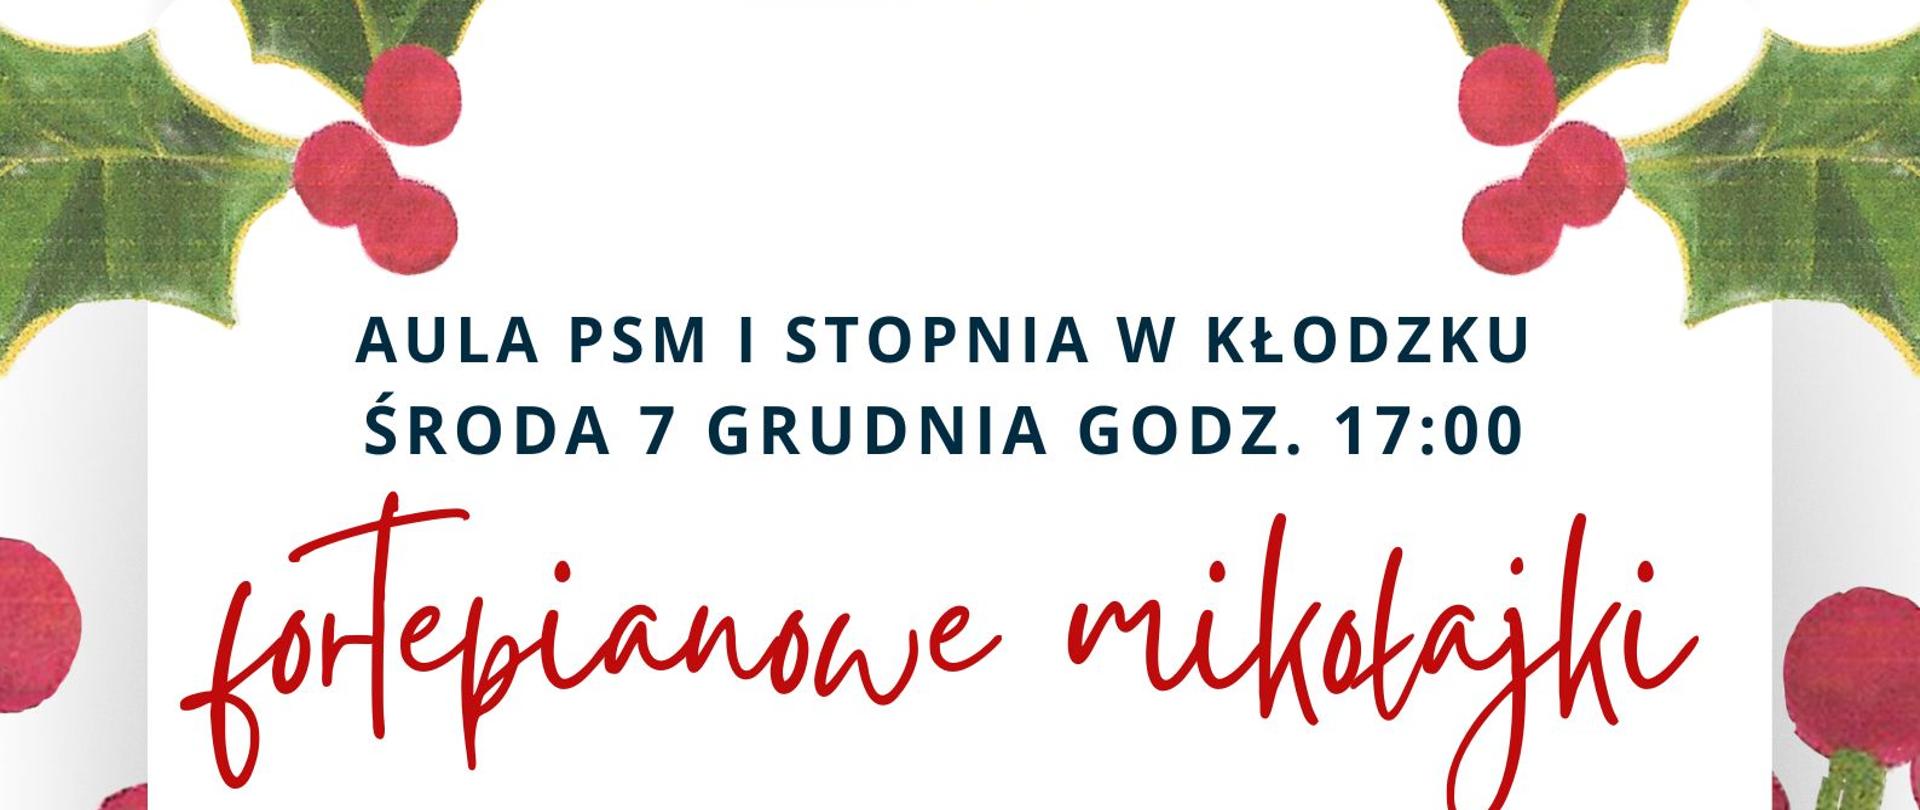 Plakat na białym tle, wokół plakatu zielone liście, na środku grafika mikołaja w czerwonym stroju z białym bałwanem i czerwona czapką. Plakat informuje o koncercie fortepianowym, który odbędzie się 07 grudnia o godz. 17:00 w auli PSM I st. w Kłodzku w wykonaniu uczniów P. Angeliki Strzygockiej, P. E. Malinowskiej i P. J. Kocyan